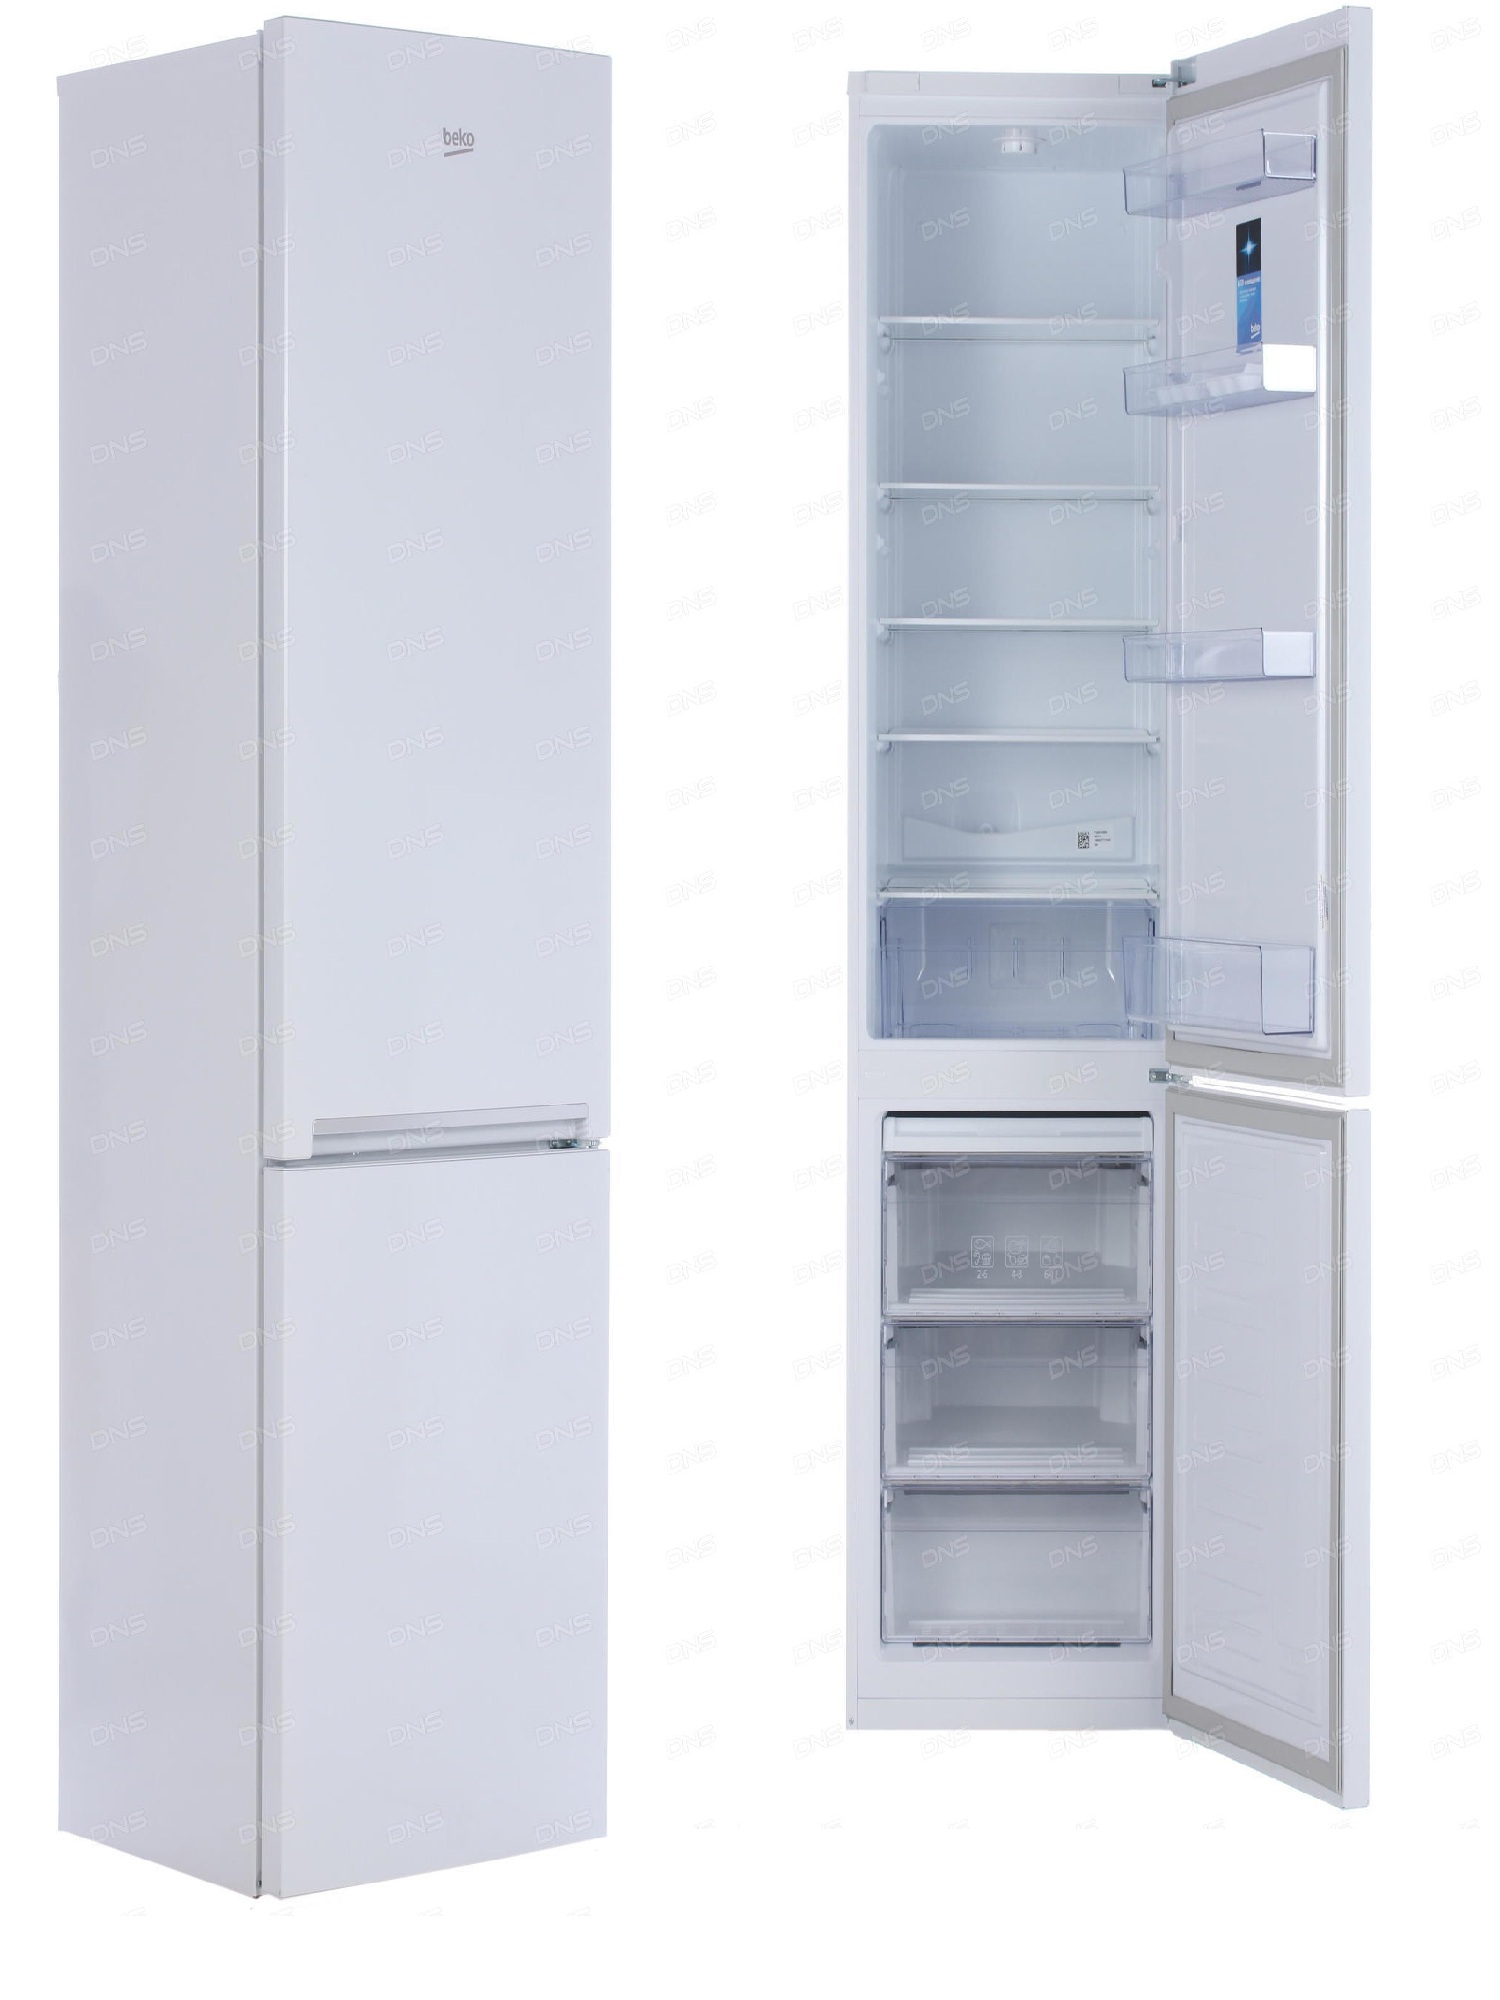 холодильник beko rcsk 379m20w, купить в Красноярске холодильник beko rcsk 379m20w,  купить в Красноярске дешево холодильник beko rcsk 379m20w, купить в Красноярске минимальной цене холодильник beko rcsk 379m20w